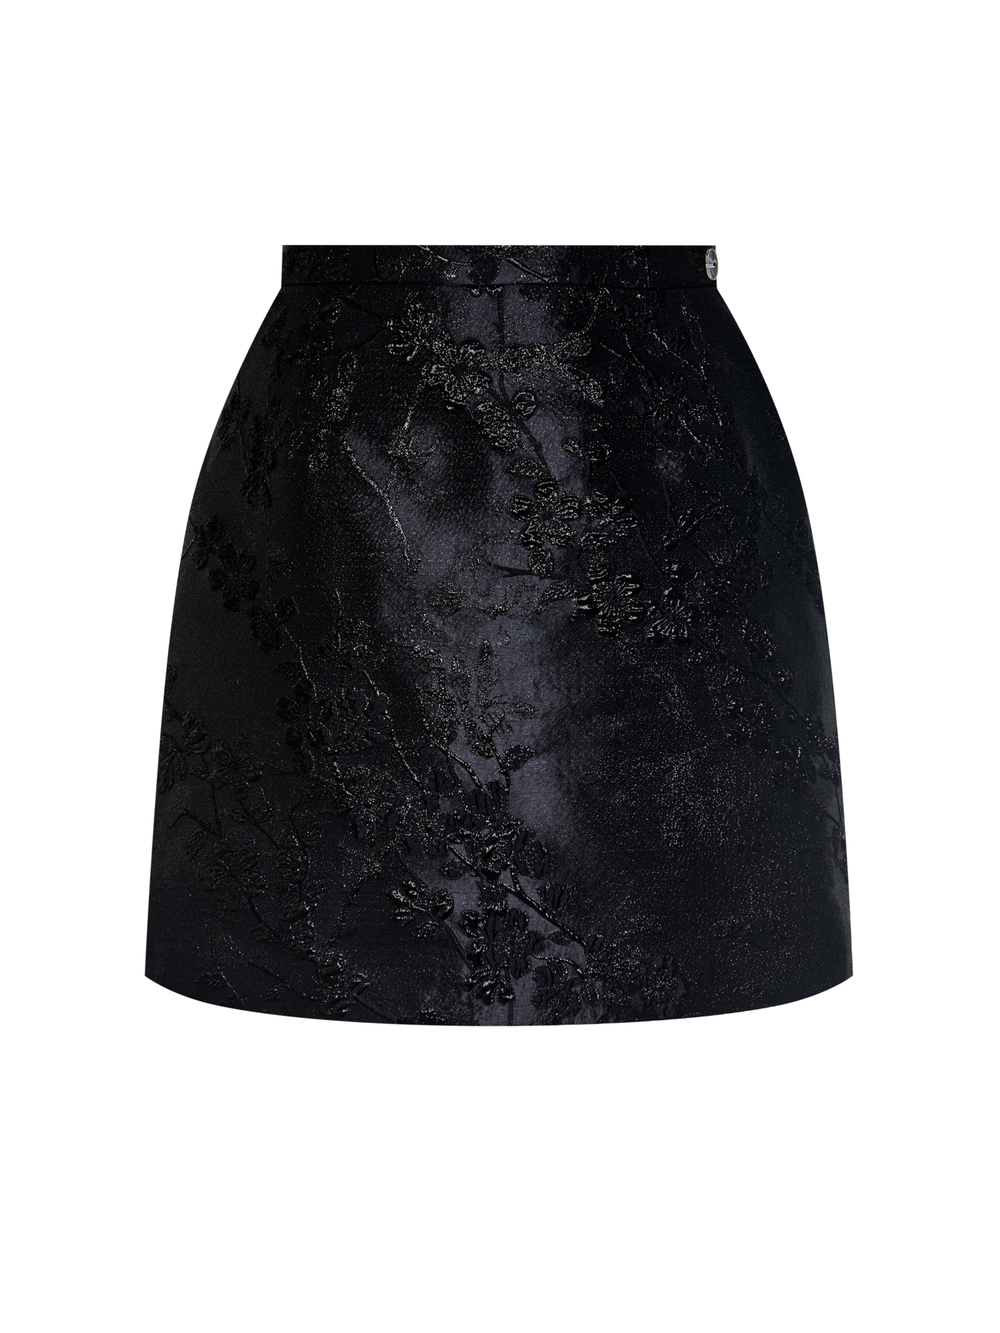 Black blossom skirt